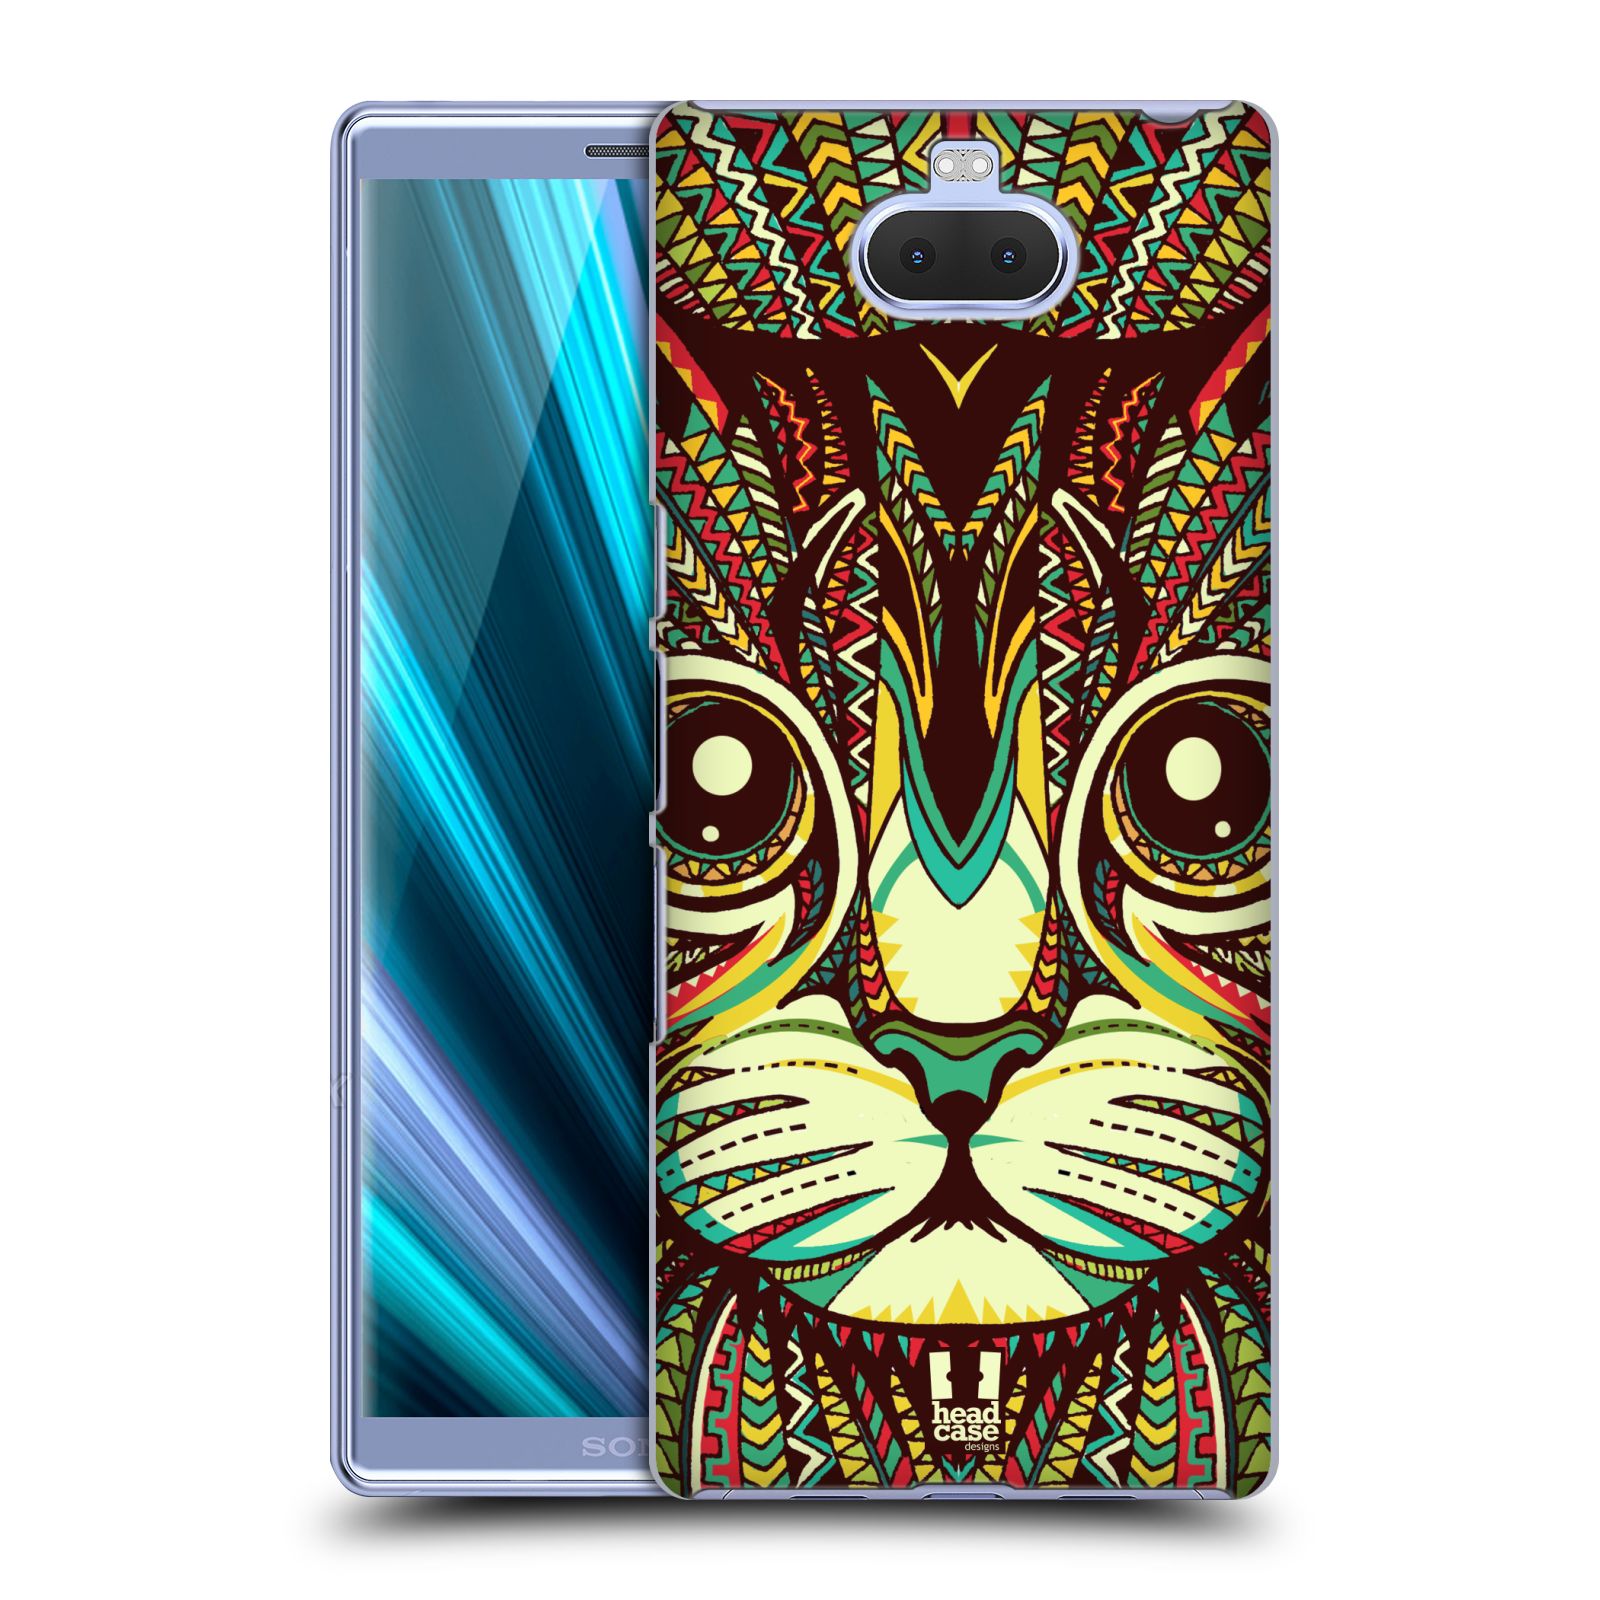 Pouzdro na mobil Sony Xperia 10 - Head Case - vzor Aztécký motiv zvíře 2 kotě